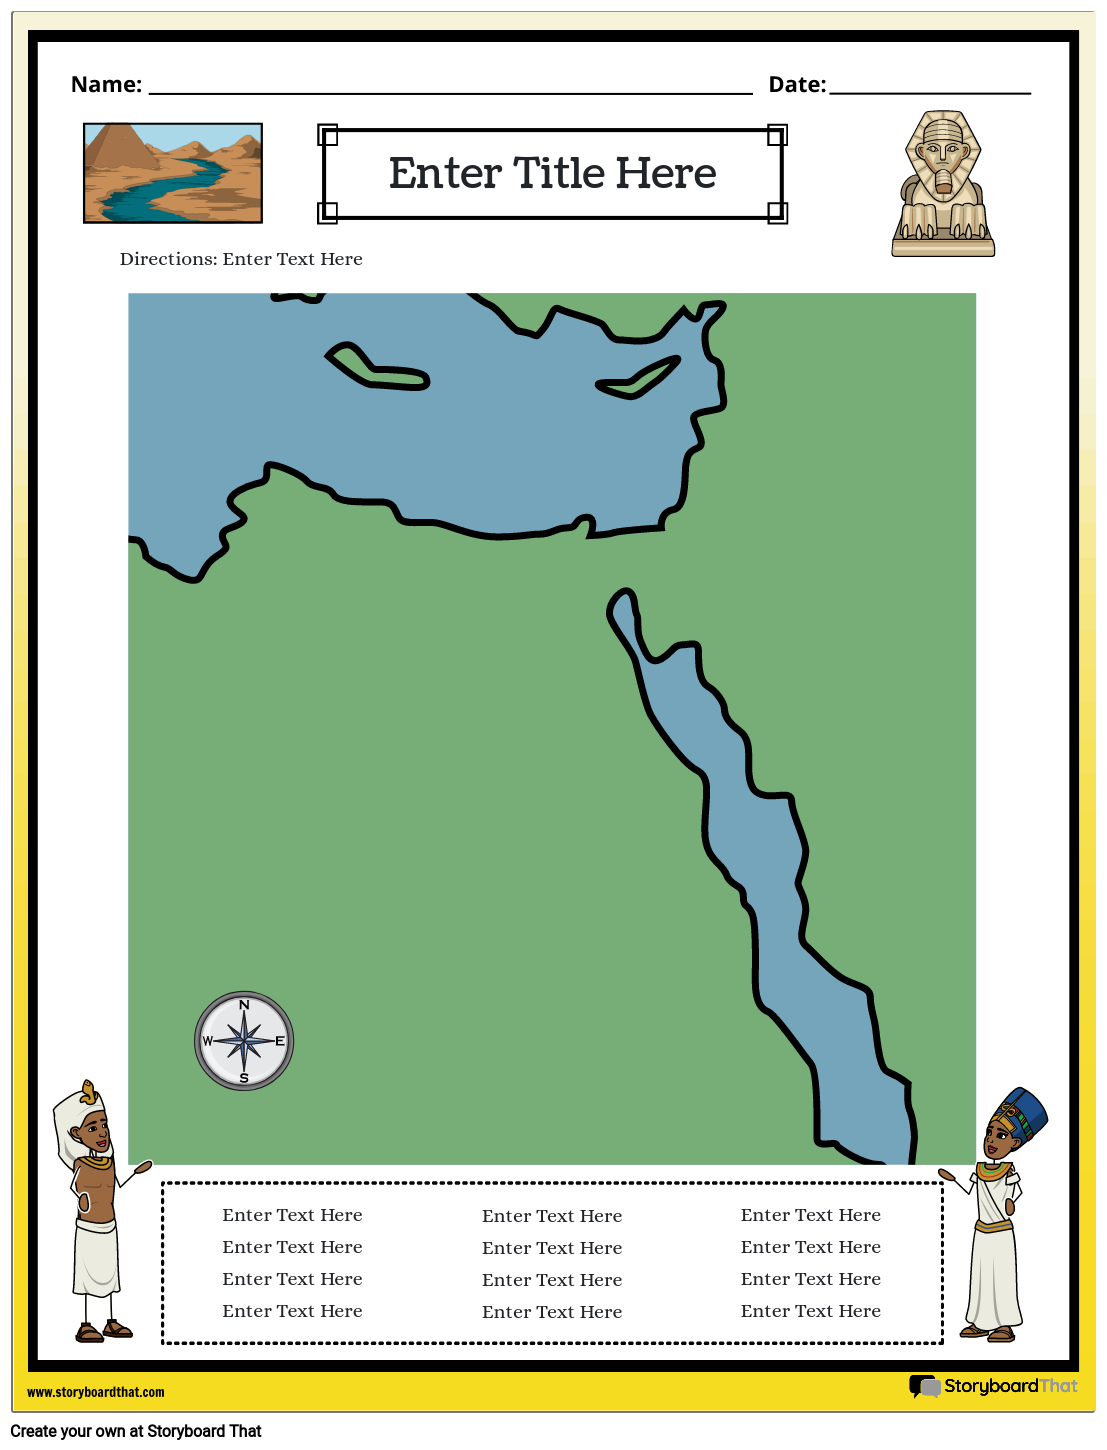 מפת מצרים העתיקה